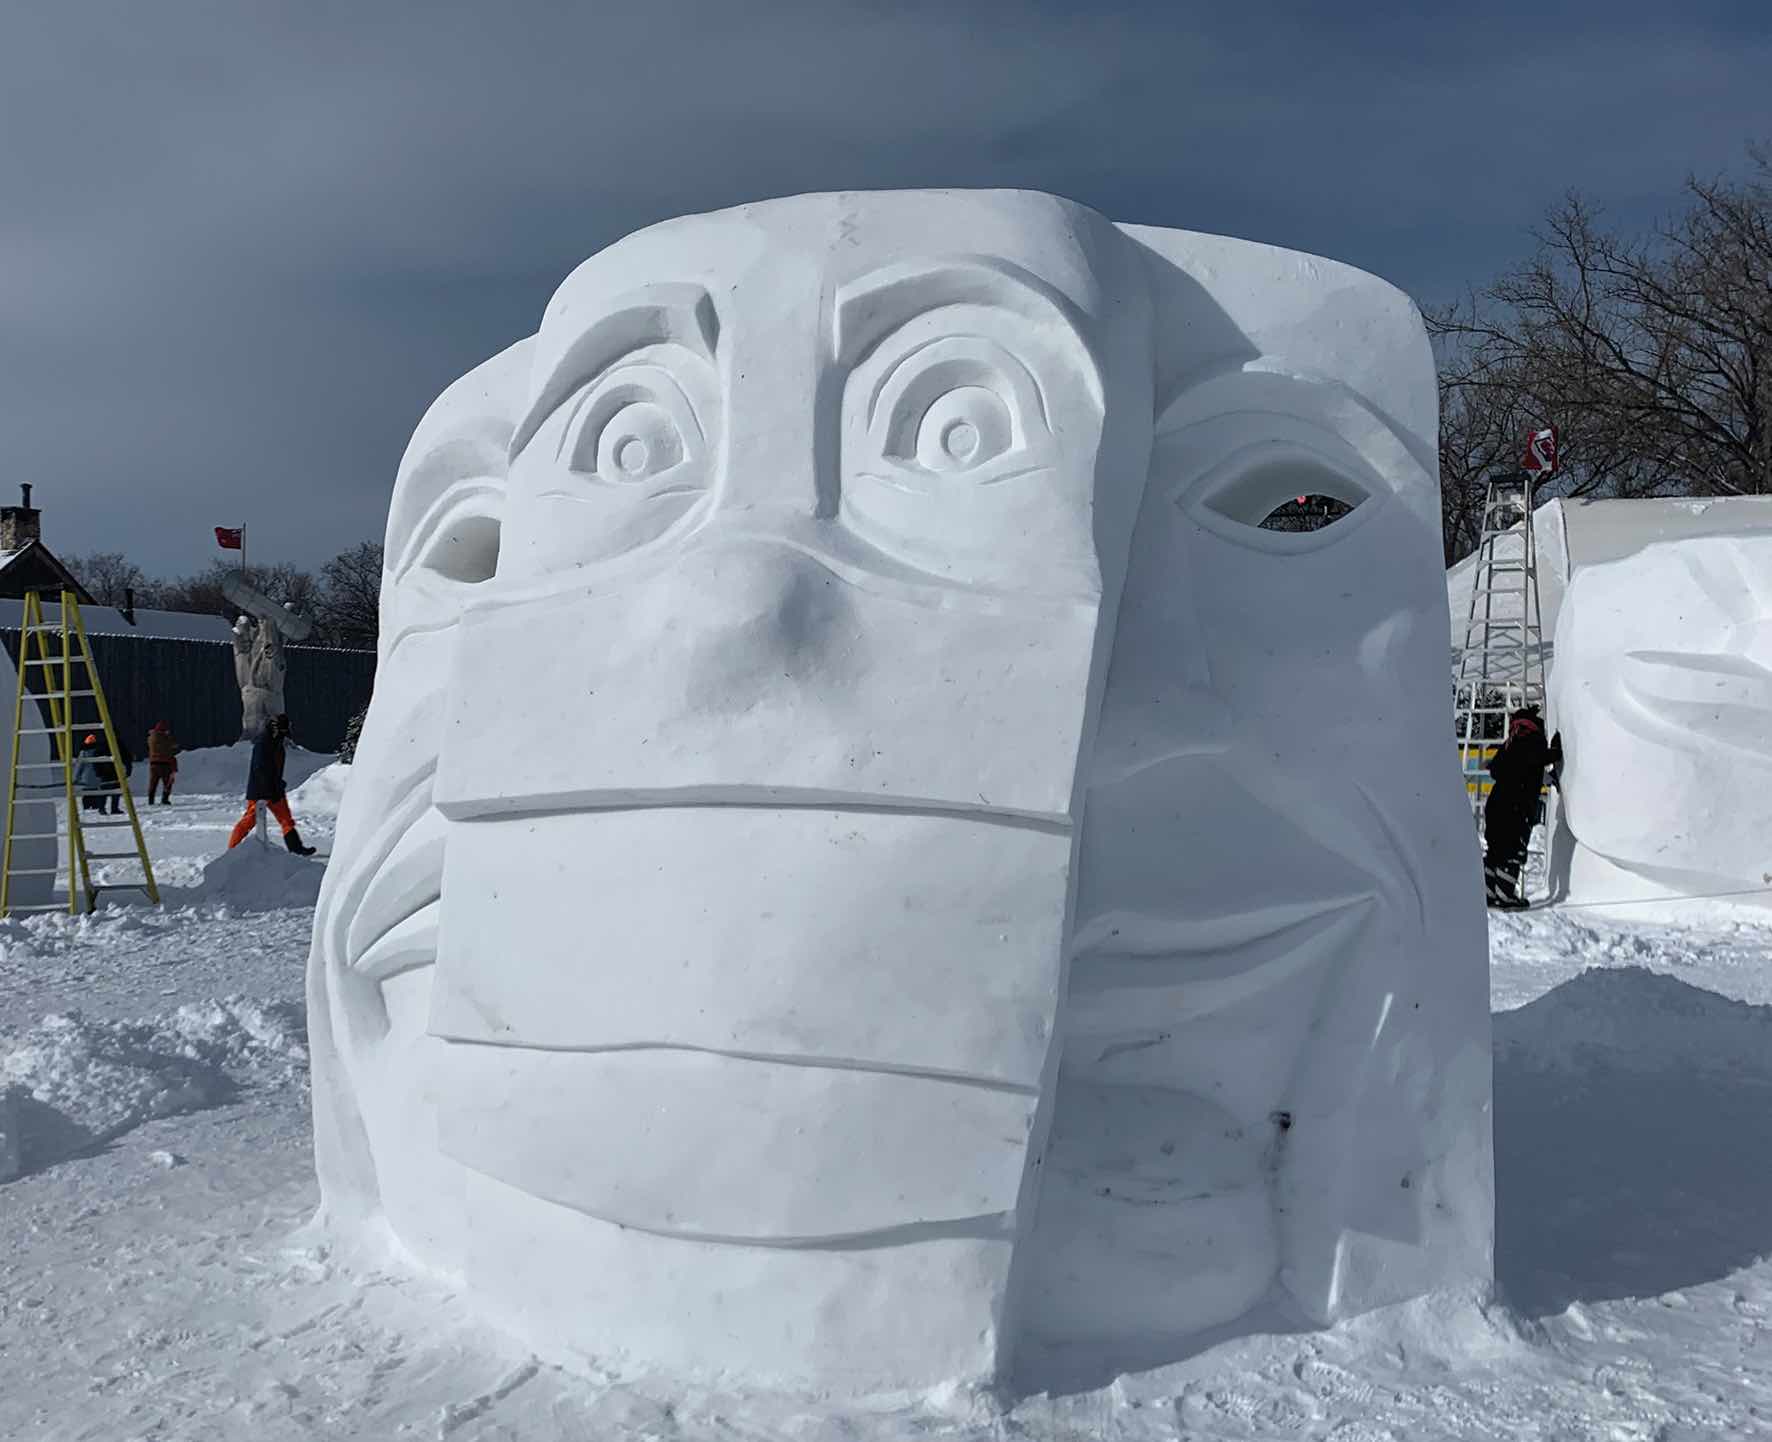 Partie intégrante du Festival du Voyageur et de son identité visuelle, les sculptures de neige ne devraient pas décorer le Parc du Voyageur cette année.